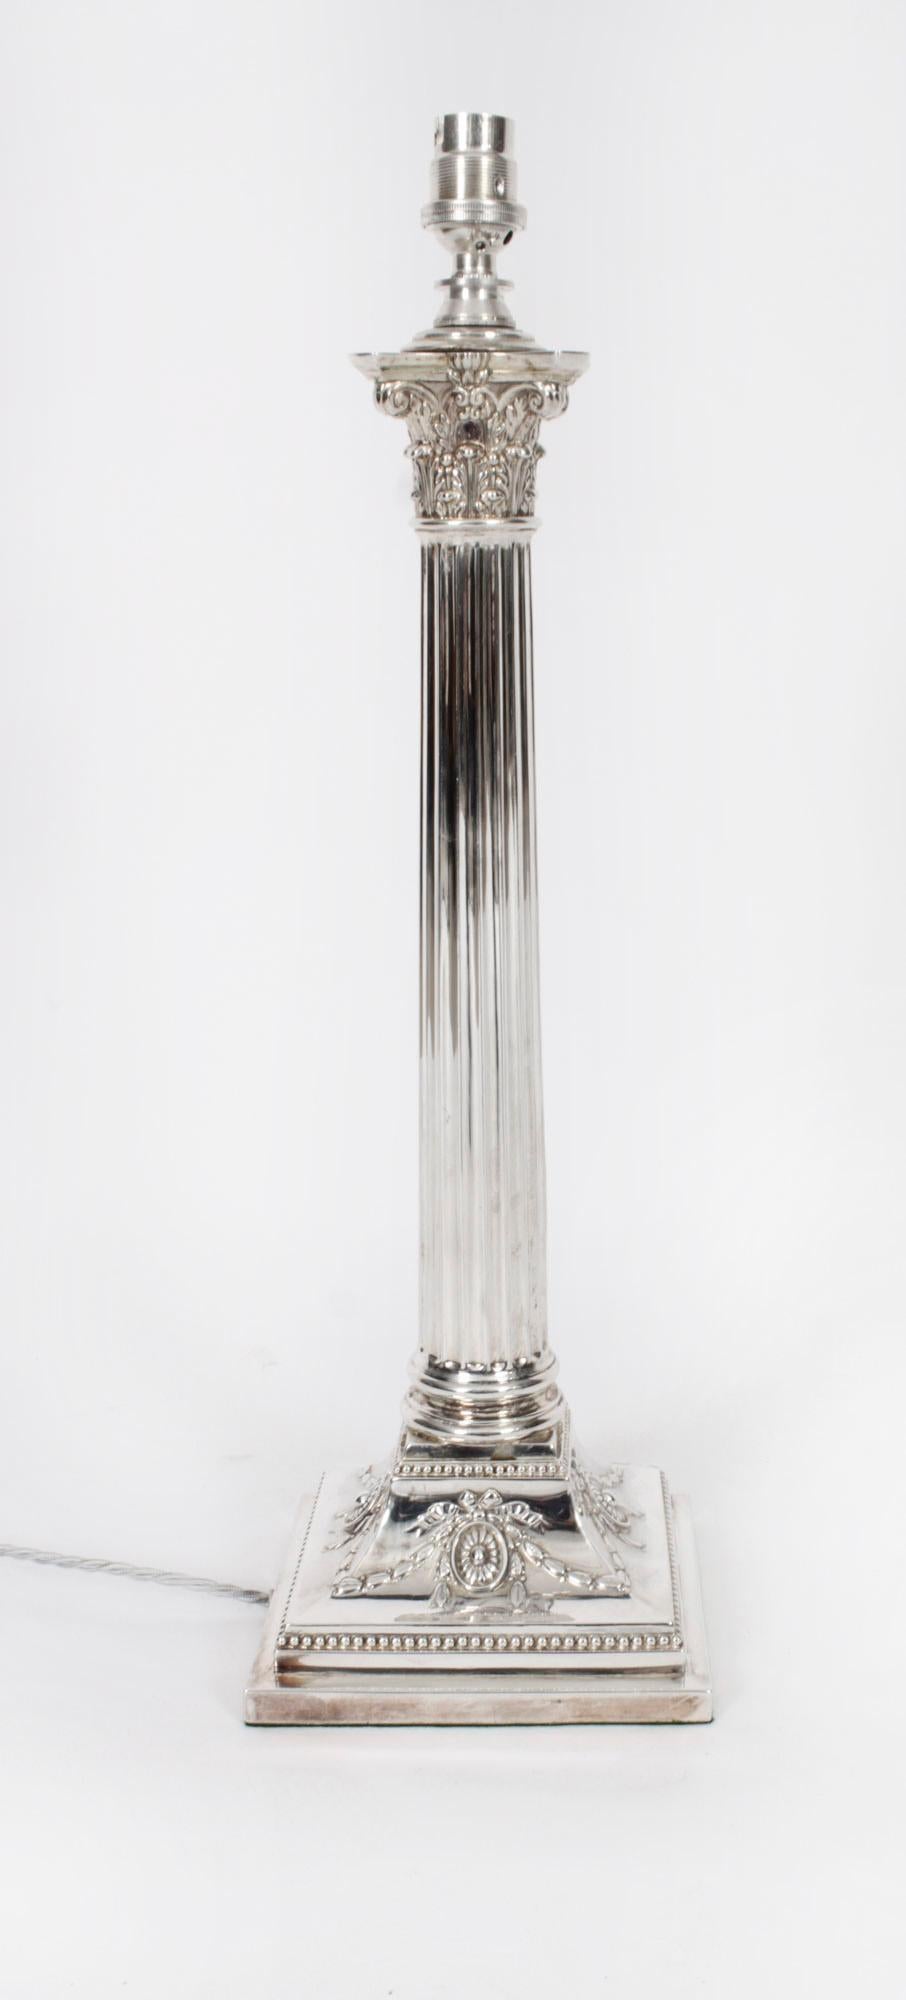 Il s'agit d'une grande et splendide lampe à huile de table victorienne à colonne corinthienne argentée, aujourd'hui convertie à l'électricité, datant d'environ 1870.
 
Cette opulente lampe de table ancienne présente un élégant chapiteau corinthien